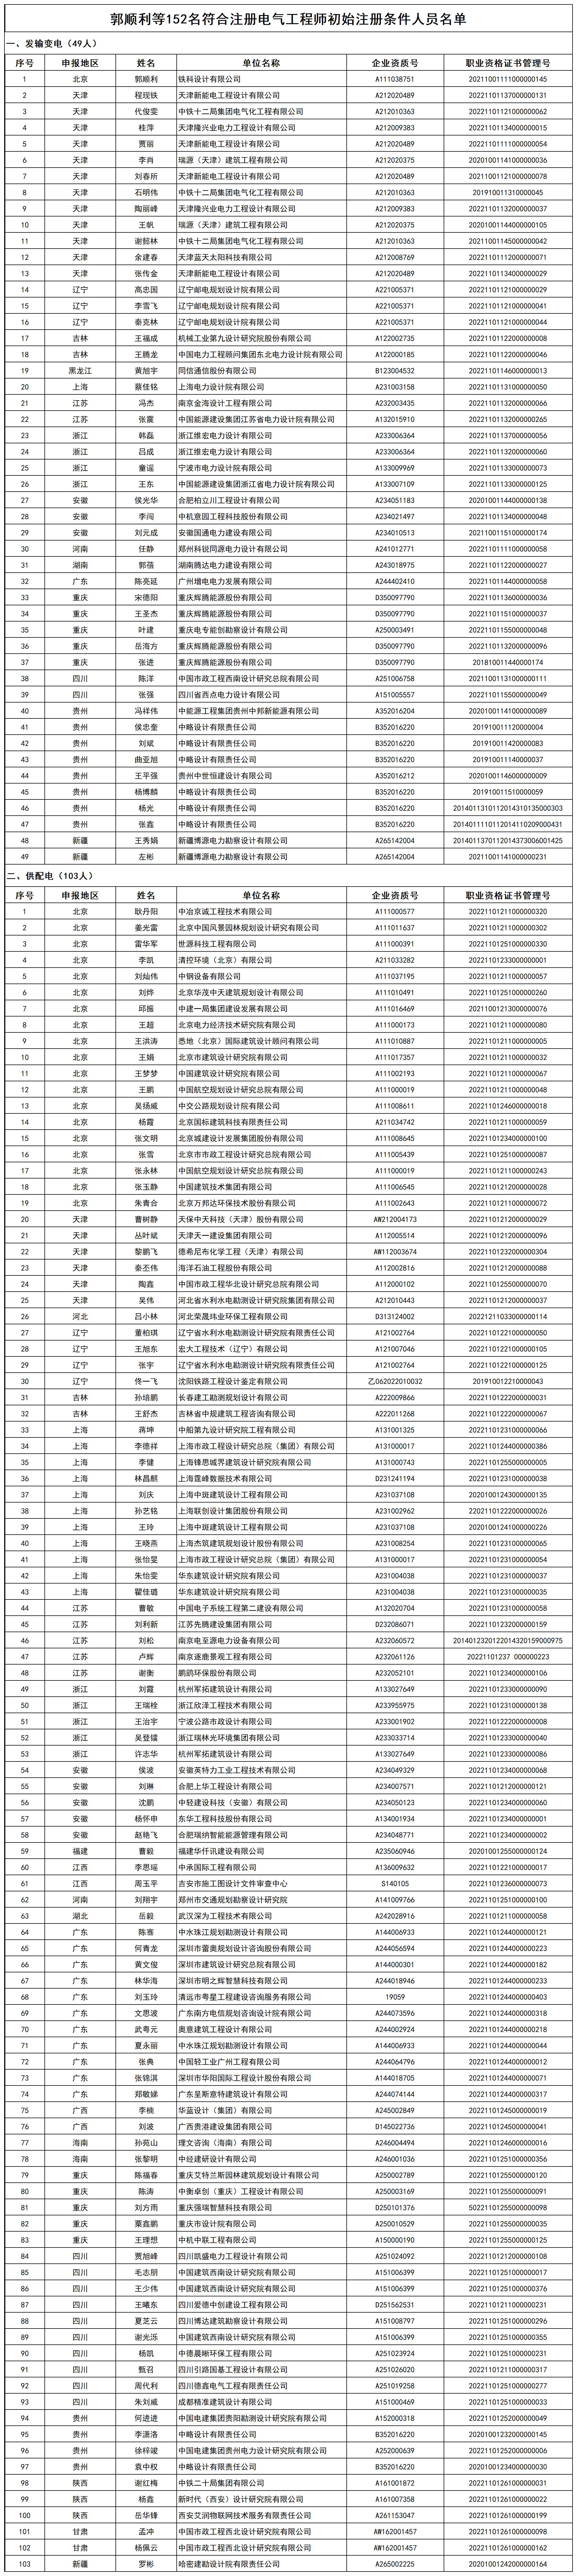 郭顺利等152名符合注册电气工程师初始注册条件人员名单_打印结果.jpg